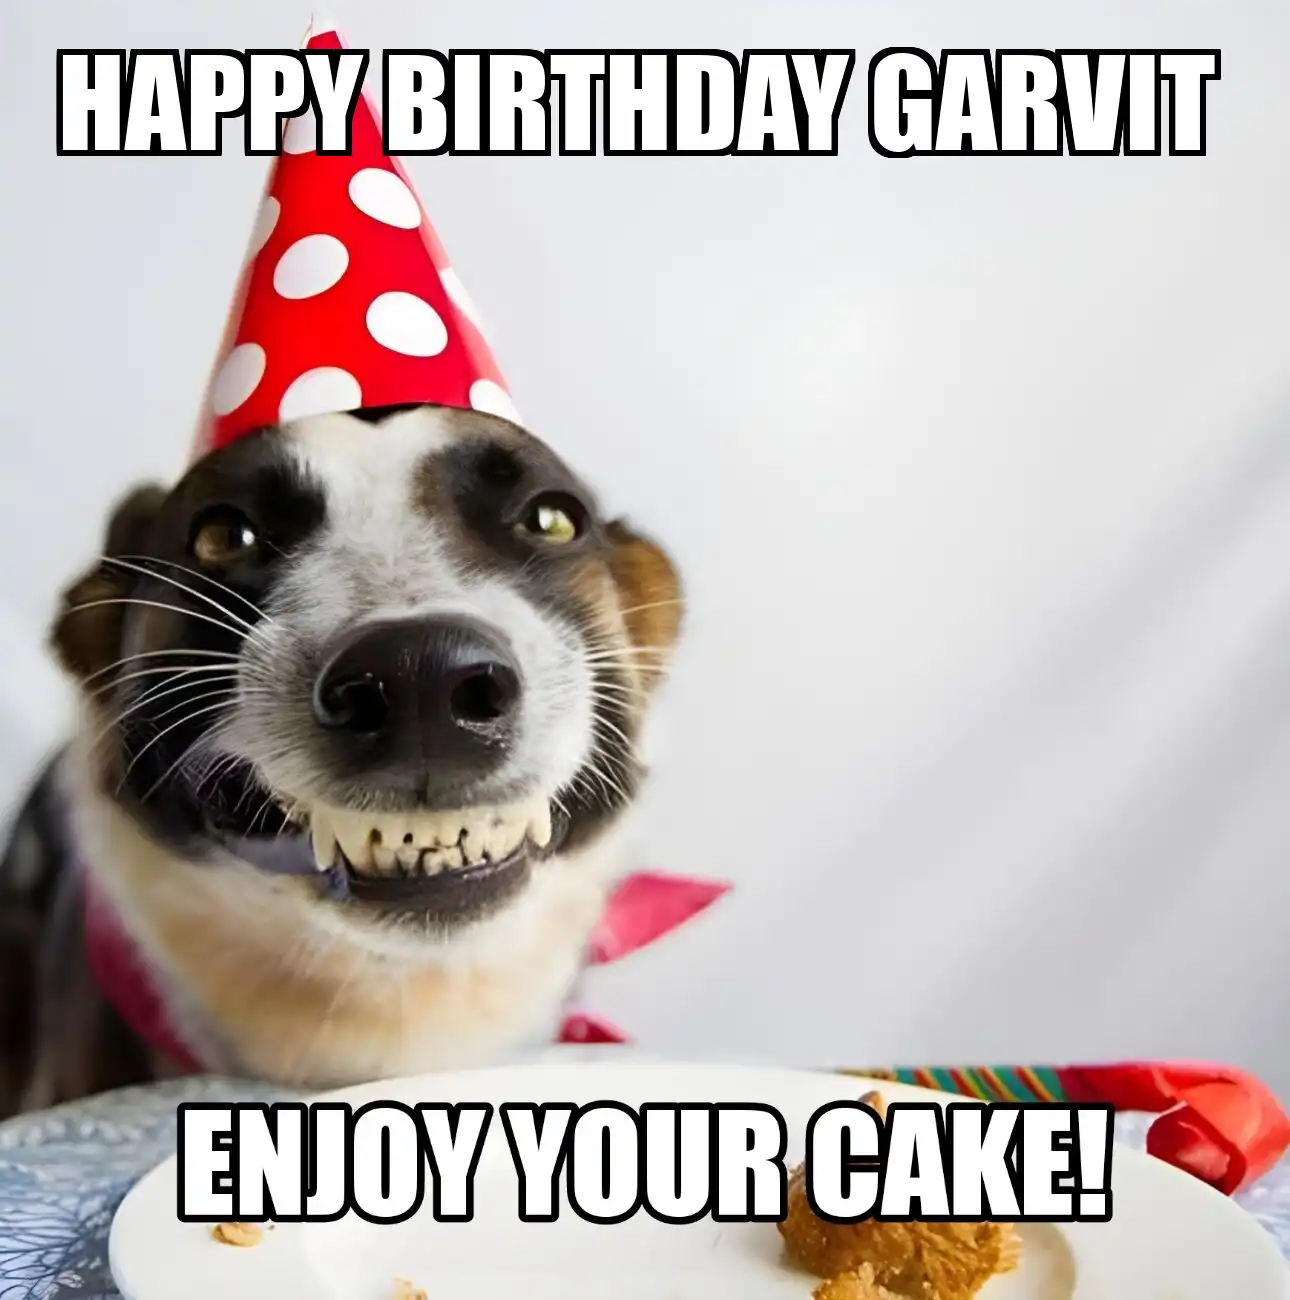 Happy Birthday Garvit Enjoy Your Cake Dog Meme